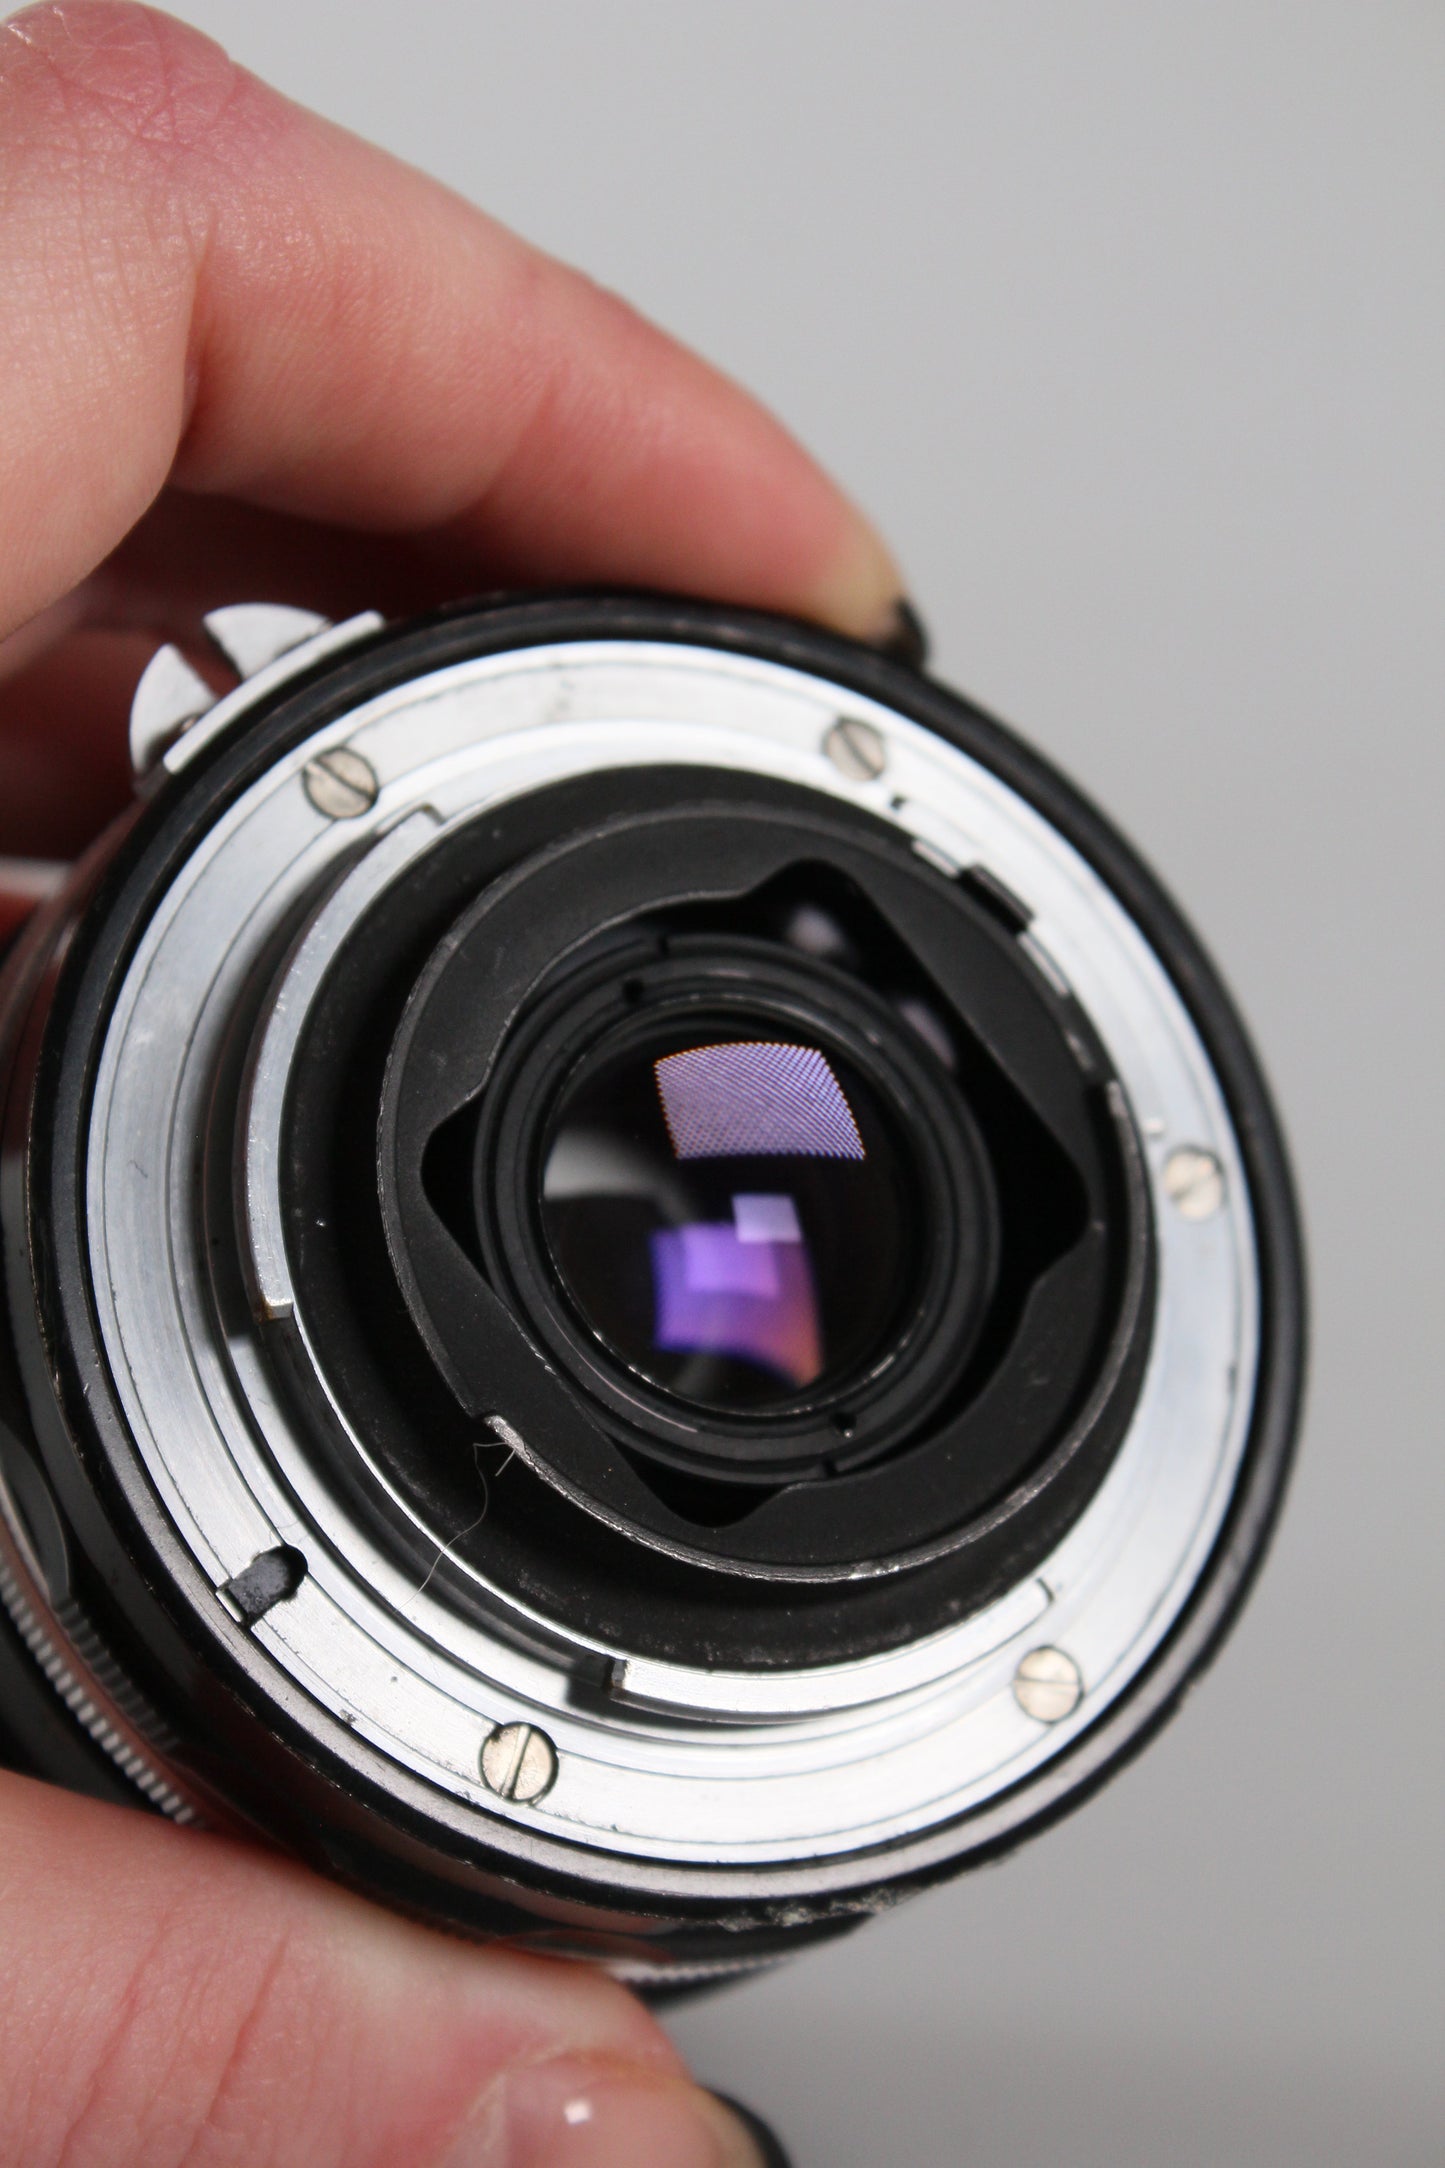 Nikon Nikkor Non AI 55mm f3.5 Micro Lens